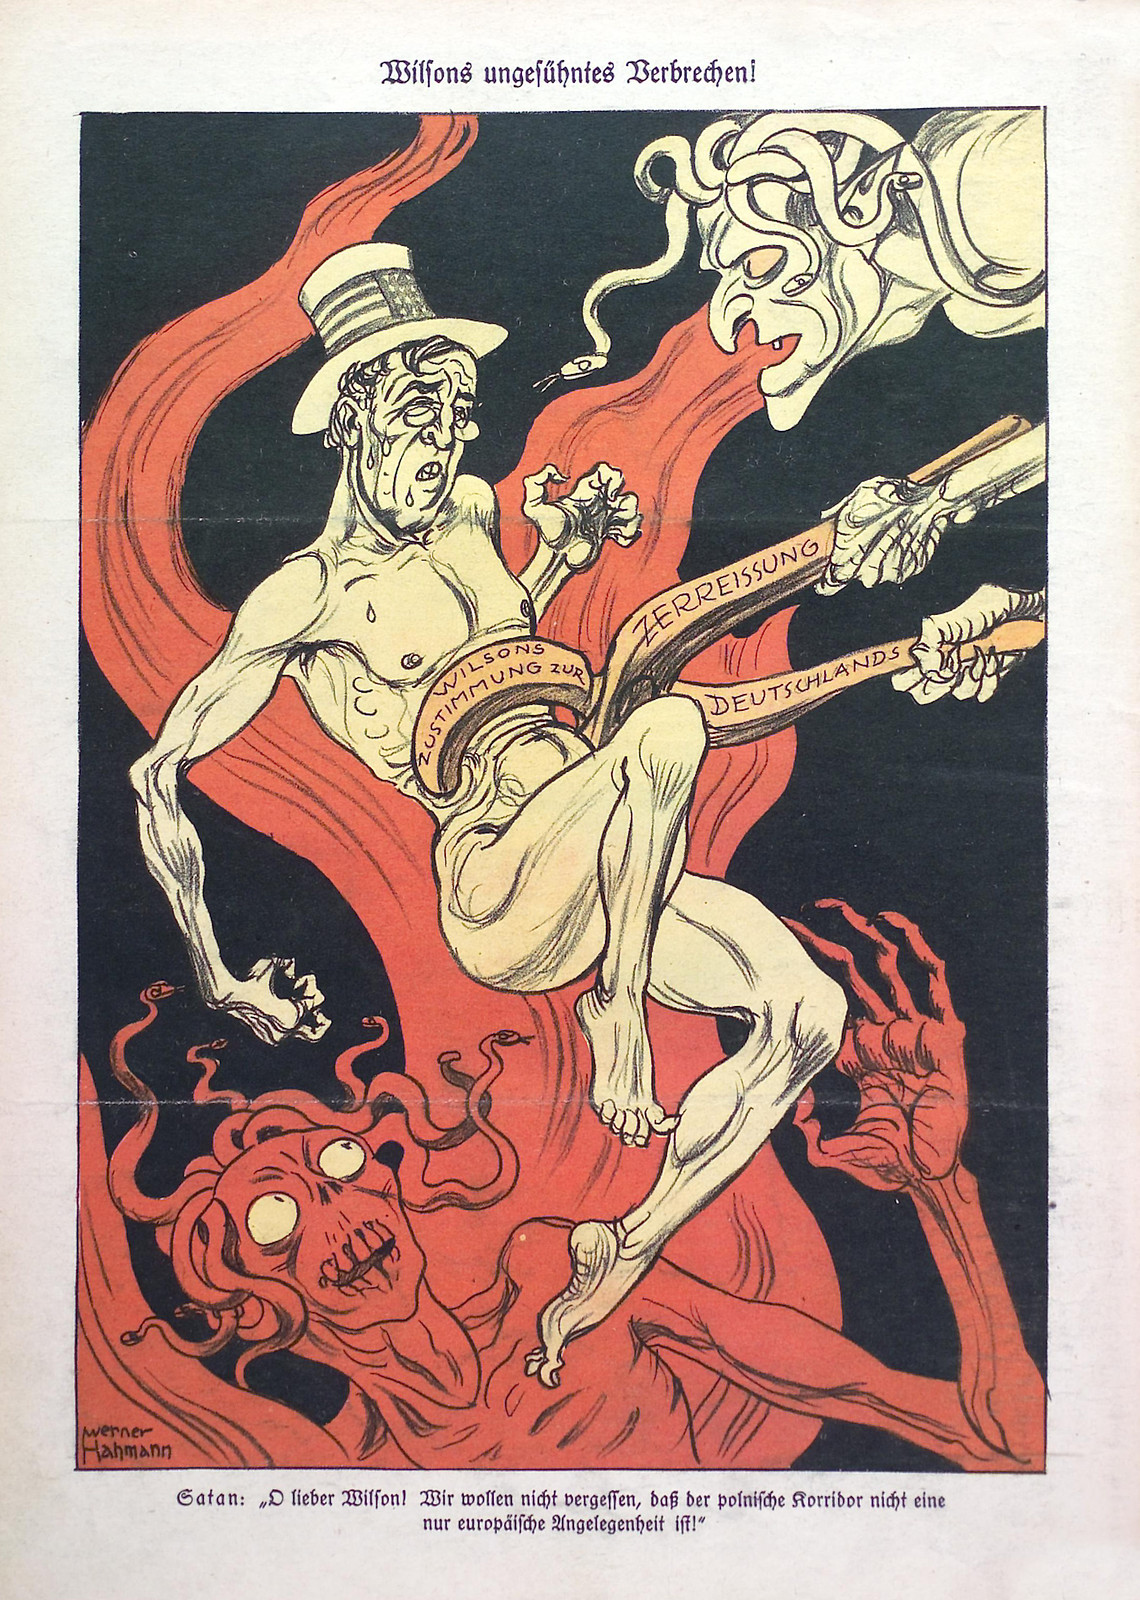 Kladderadatsch, Illustraion by Werner Hahmann, 1931